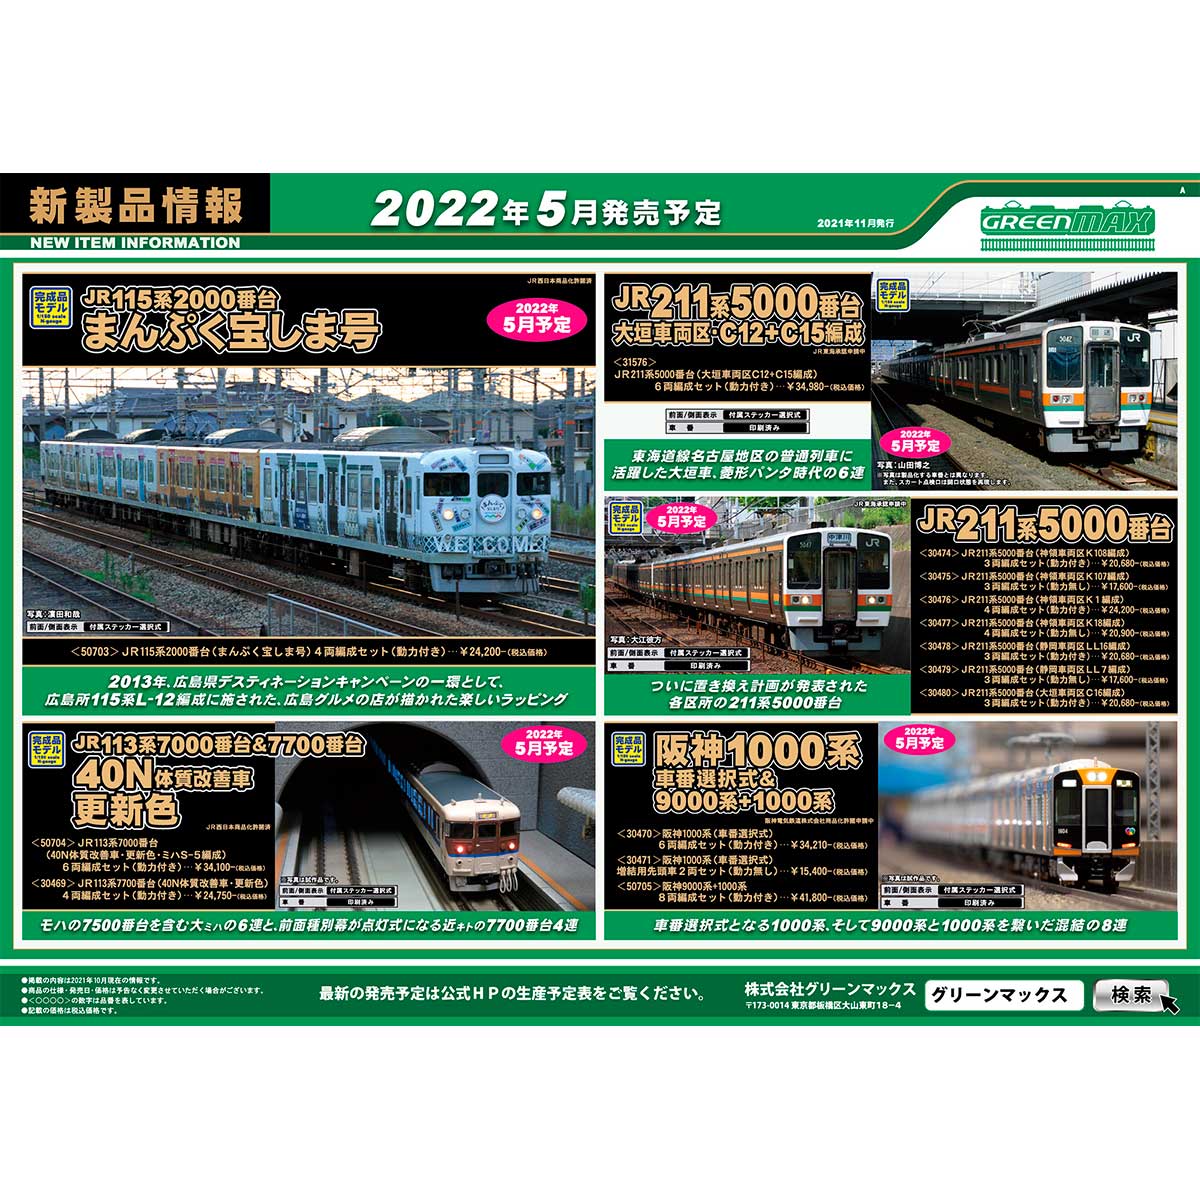 2021年11月10日発行A｜新製品情報ポスター｜Nゲージ鉄道模型のグリーン